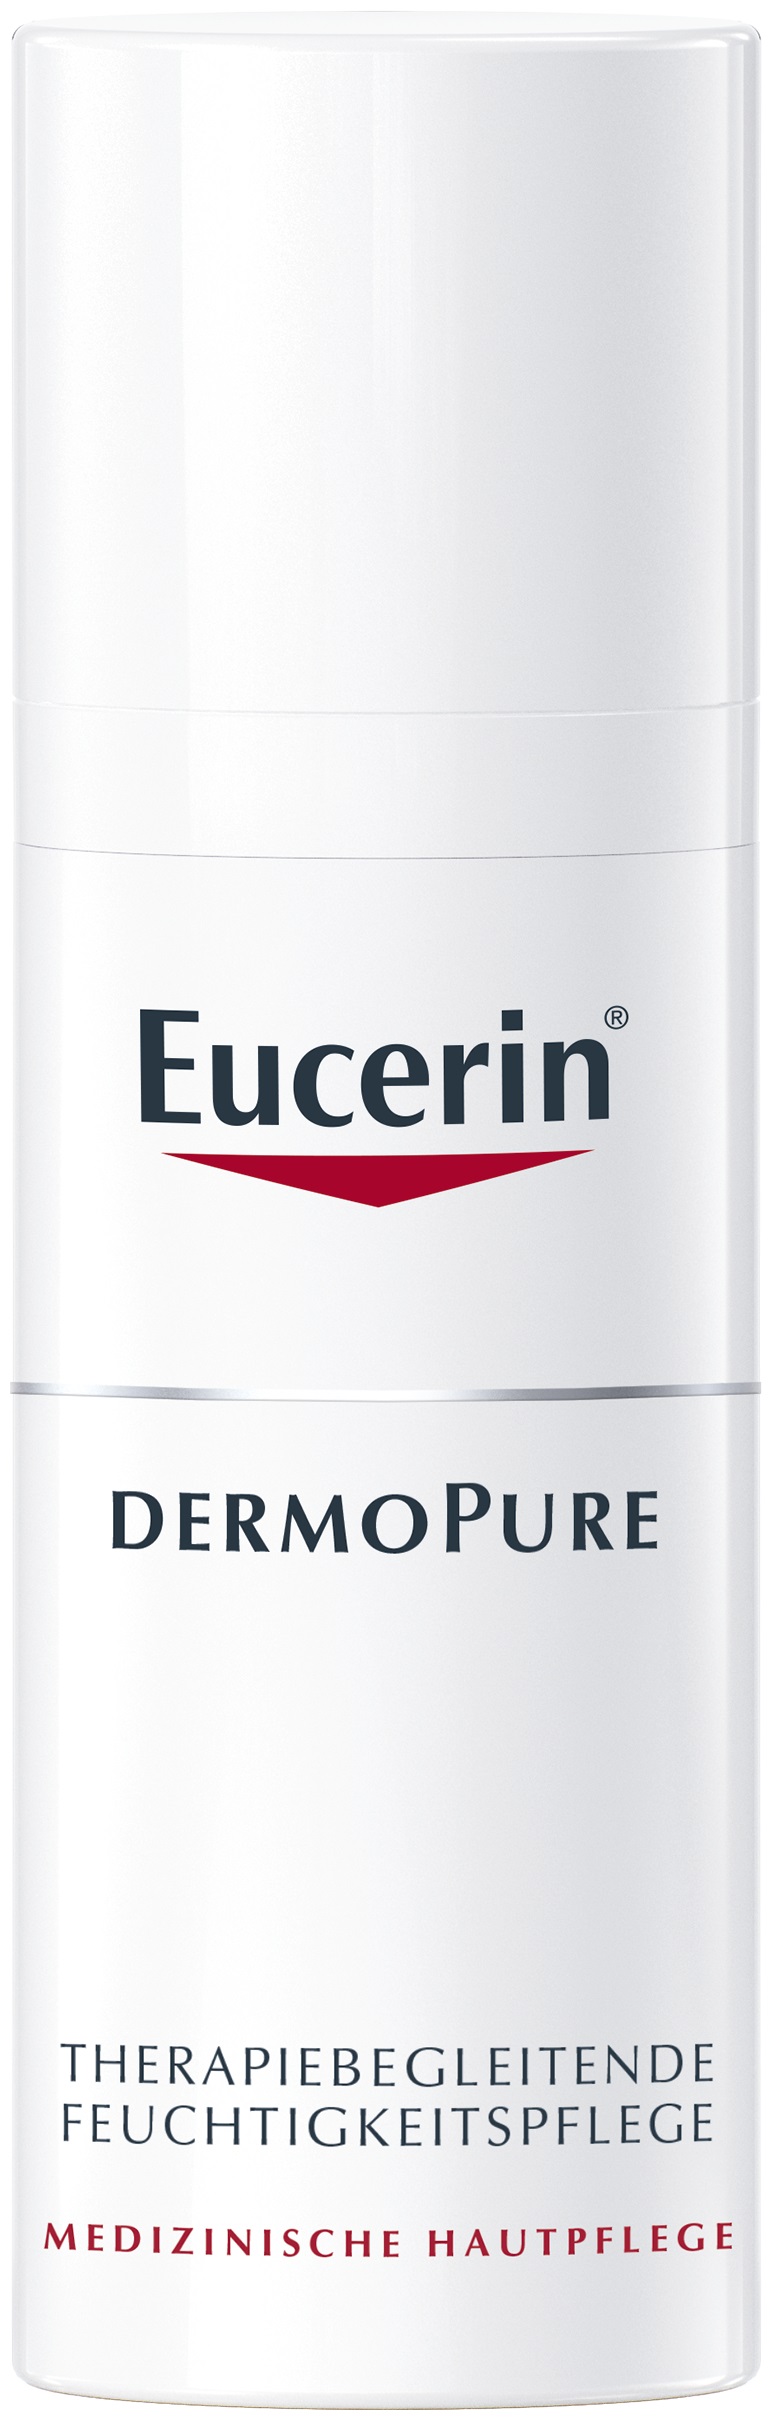 EUCERIN DermoPure bőrnyugtató krém, akne terápia kiegészítő kezelés 50 ml